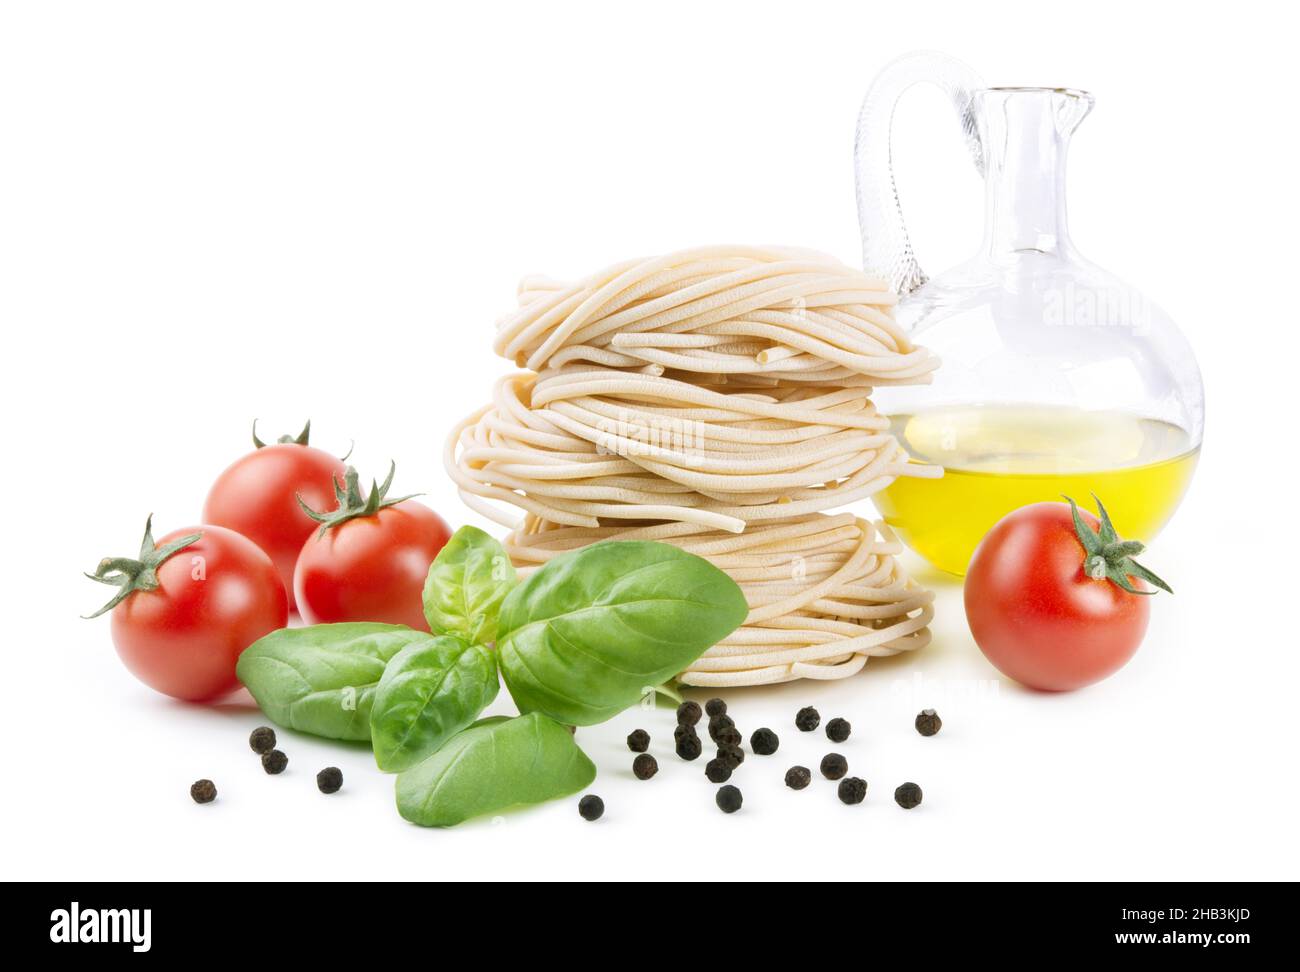 Pici, pasta tradizionale italiana prodotta in Toscana con acqua, semola di grano duro e sale. Spaghetti fatti in casa. Foto Stock